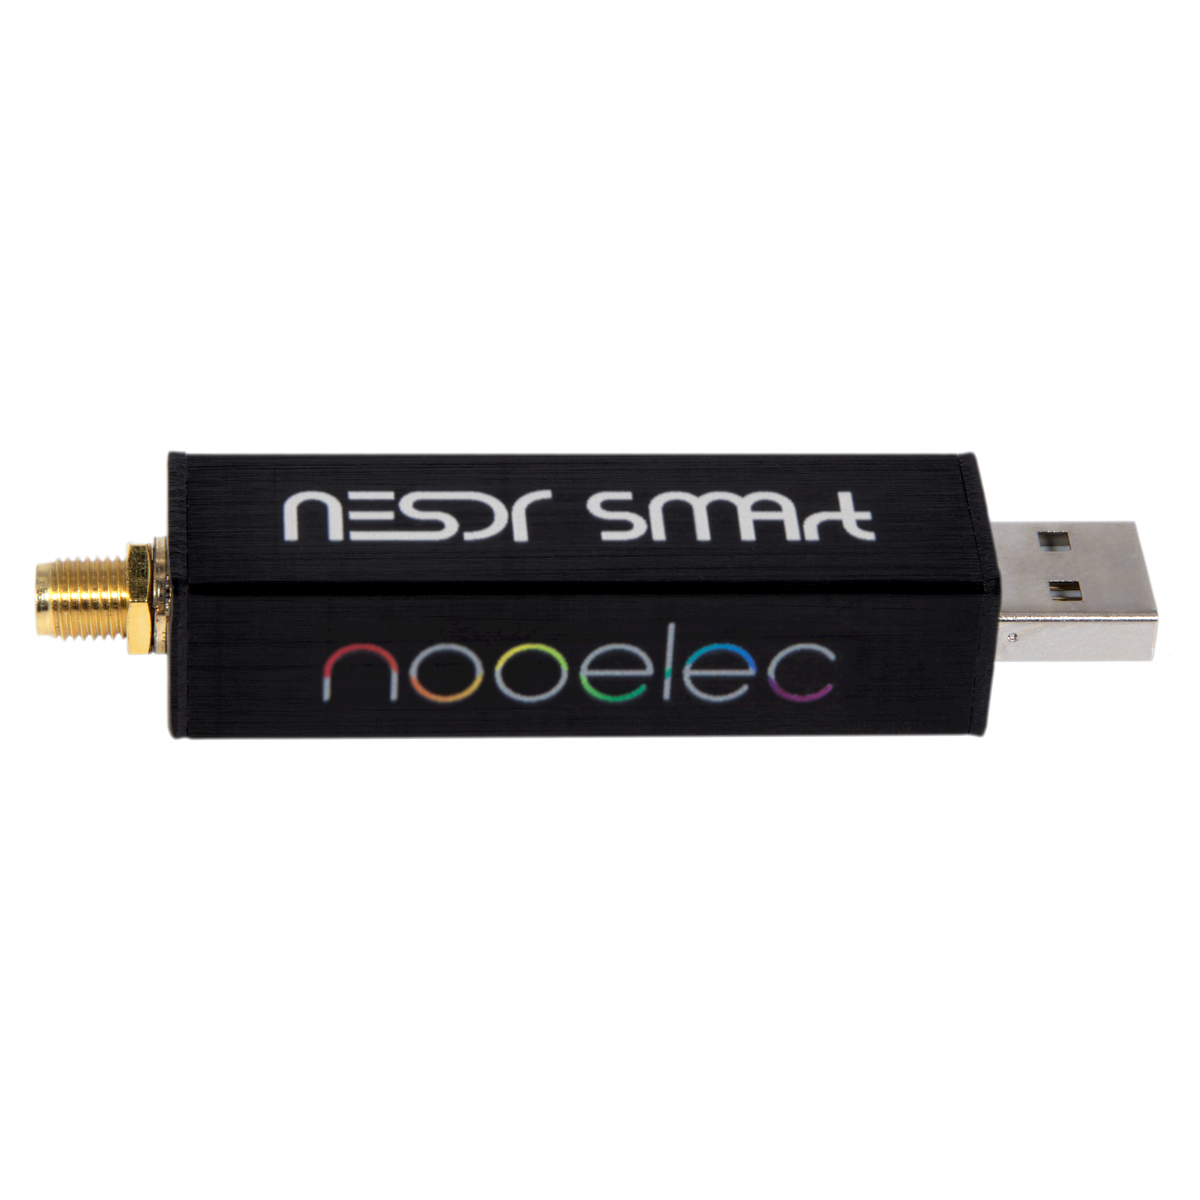 Nooelec - Nooelec NESDR SMArt v5 SDR - HF/VHF/UHF (100kHz-1.75GHz) RTL-SDR.  RTL2832U & R820T2-Based Software Defined Radio